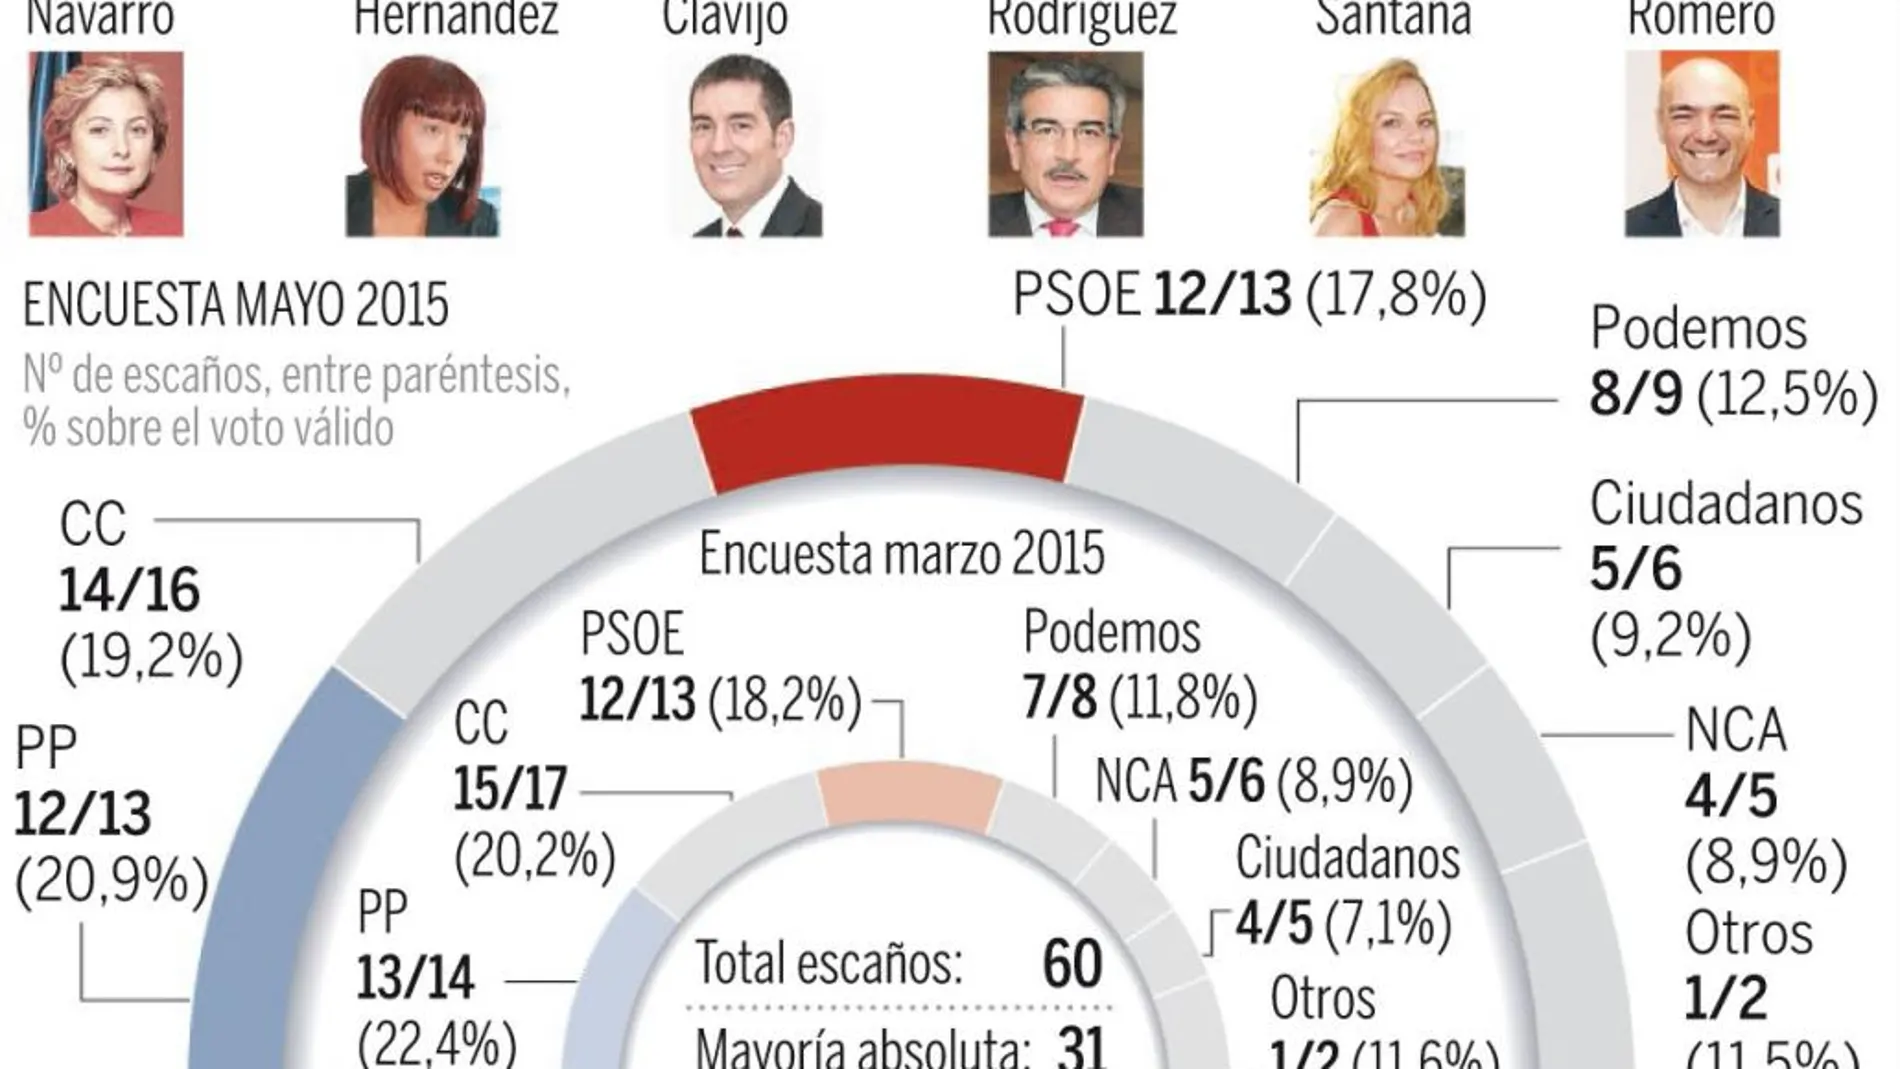 Isalas Canarias: La Coalición CC-PSOE necesitará otros apoyos para gobernar